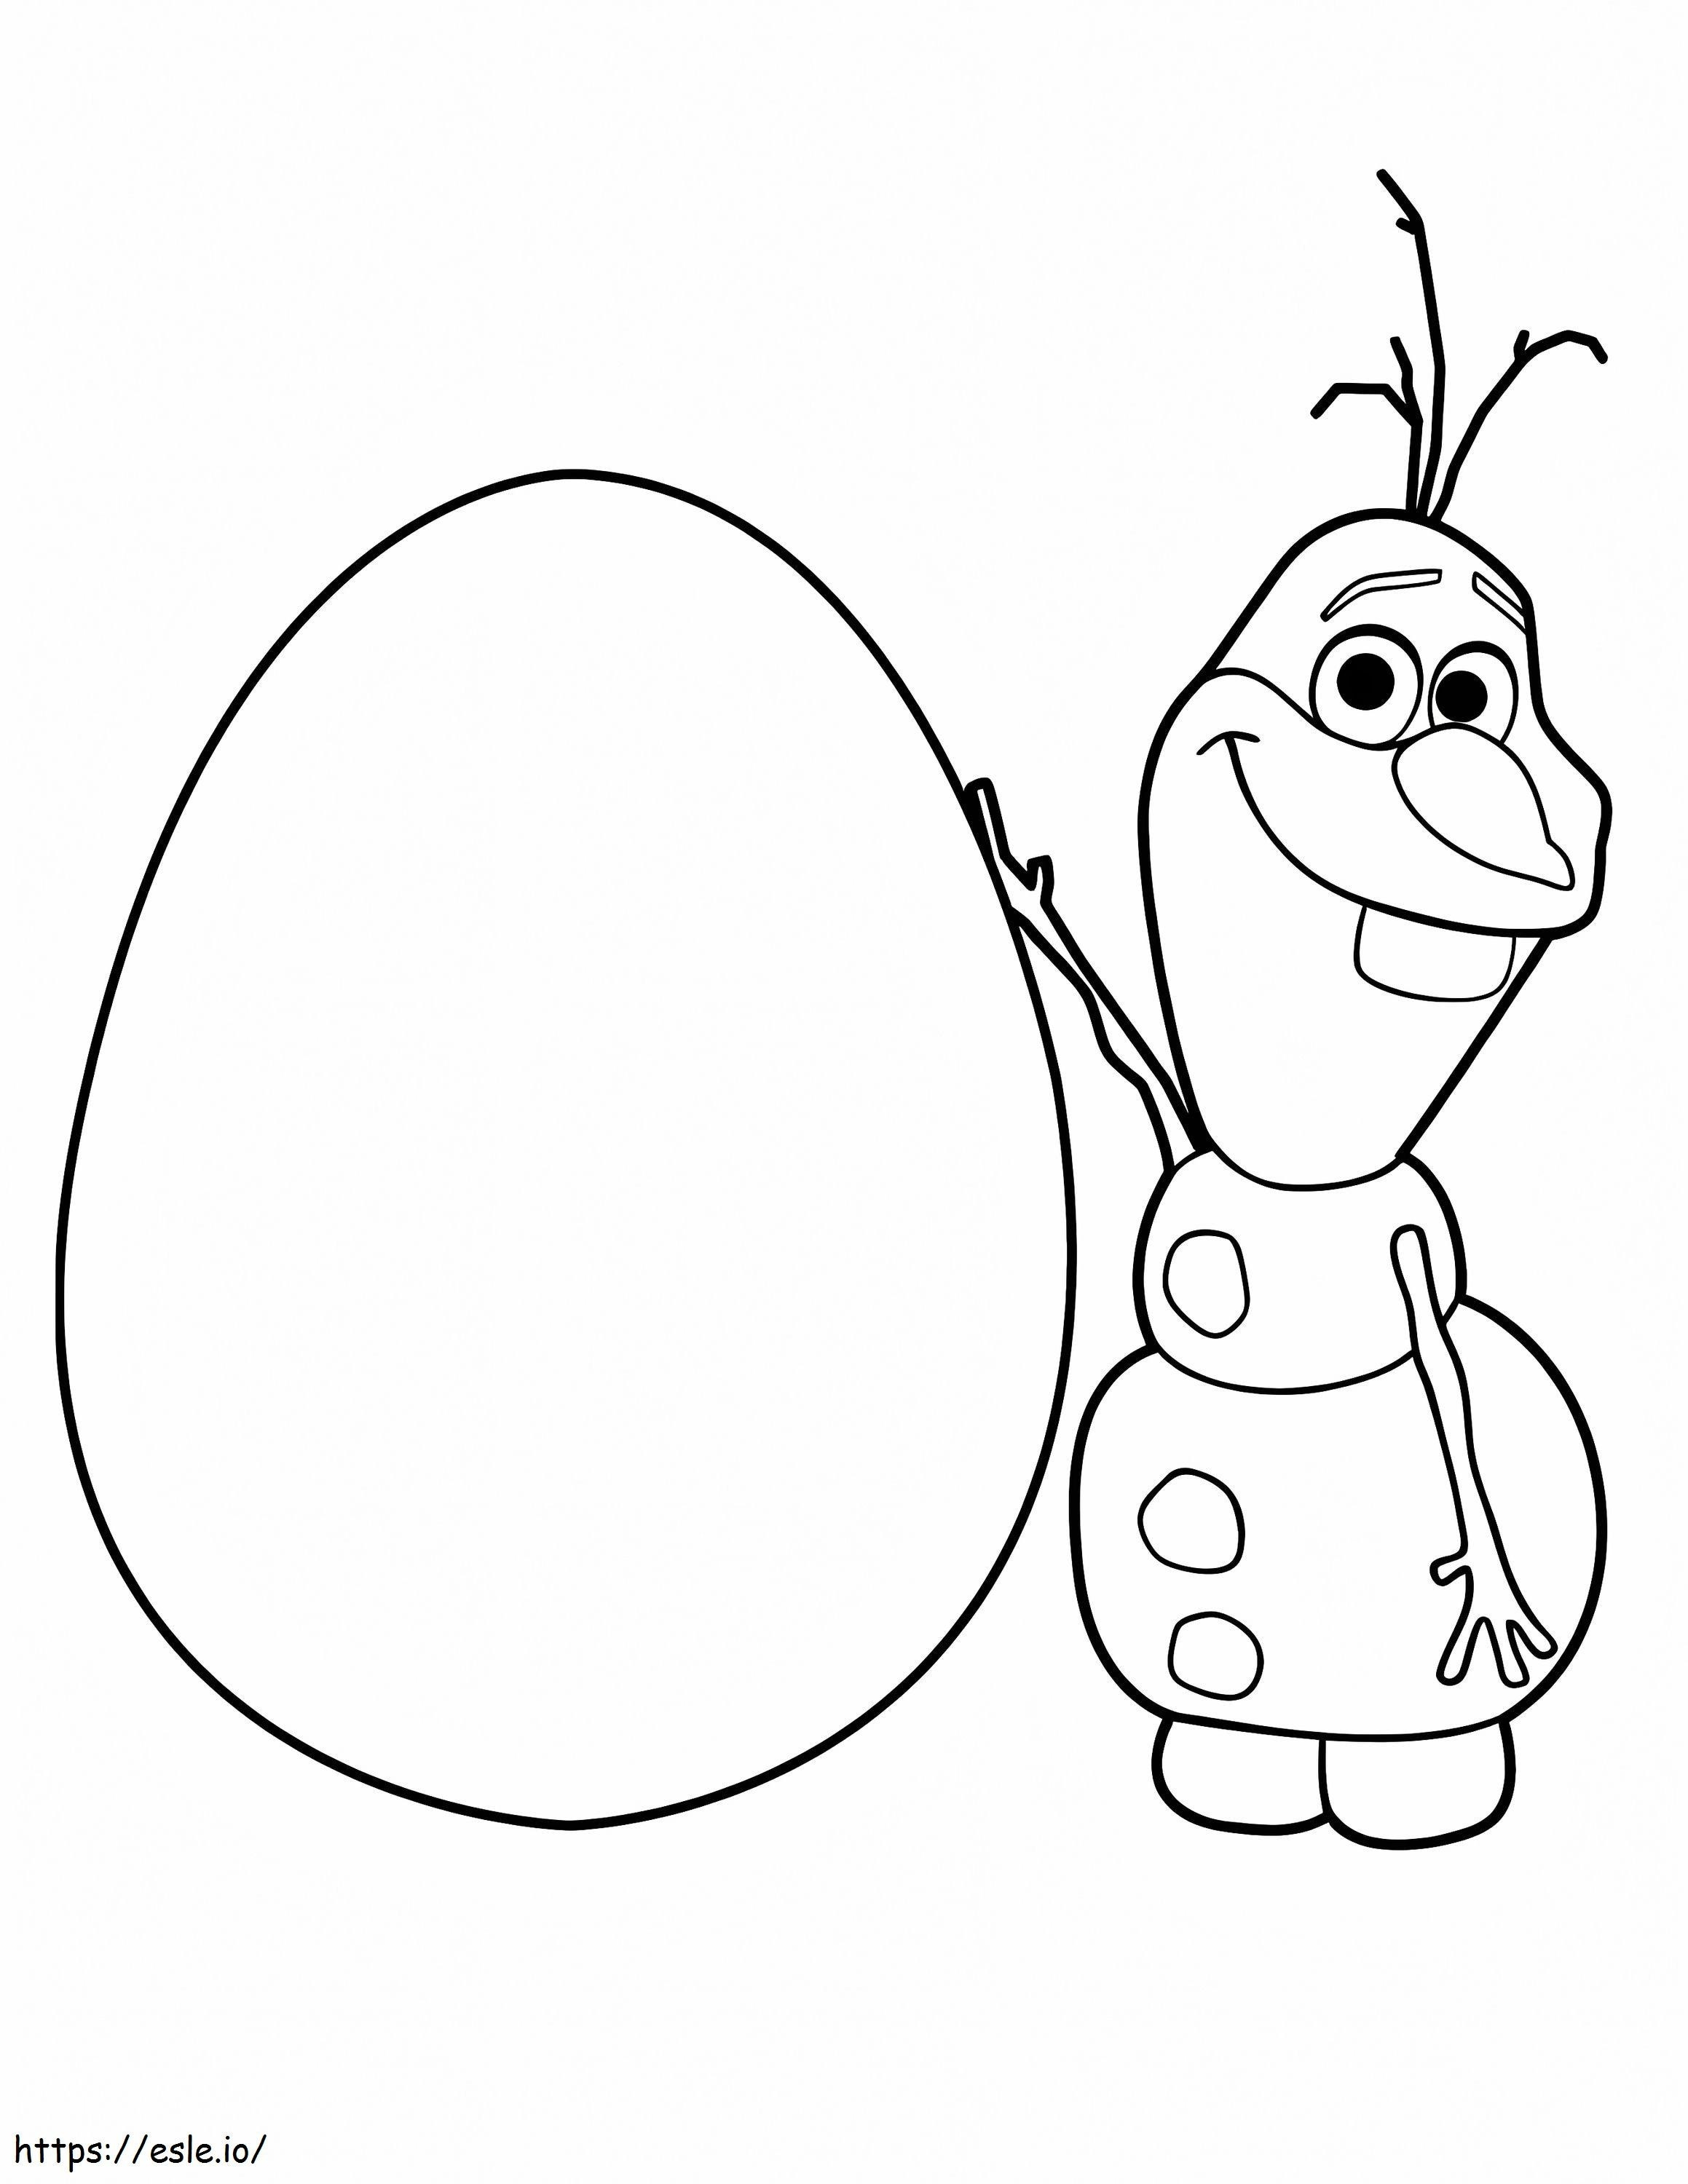 Olaf e uovo da colorare